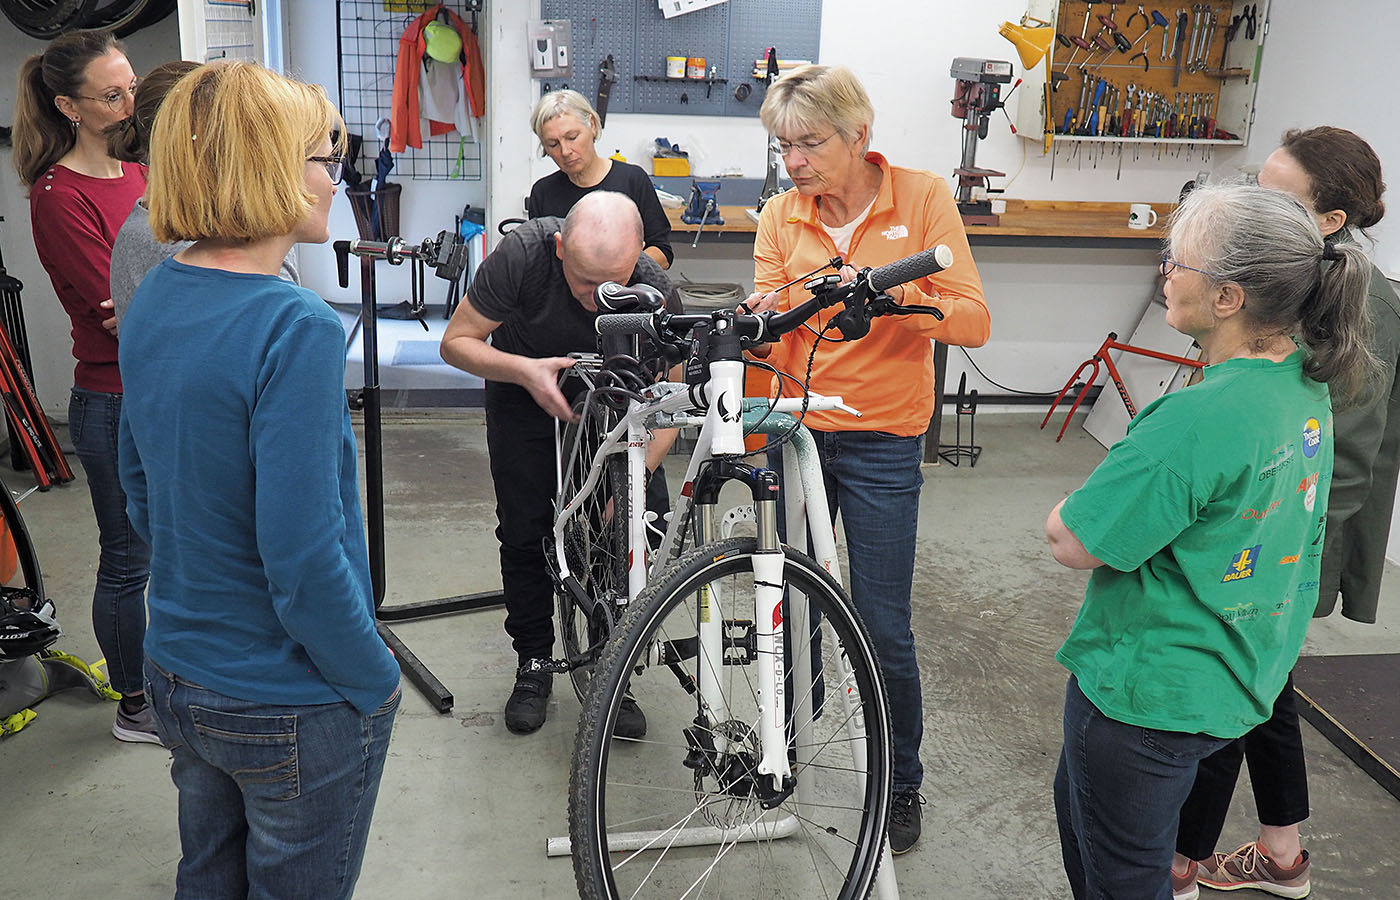 Der erste Fahrrad-Reparaturkurs nur für Frauen fand in der Selbsthilfewerkstatt des ADFC in Bonames statt. Insgesamt acht Frauen nahmen mit Erfolg teil – und haben viel dazu gelernt.<br><span class="image-copyright">Andrea Maldonado (3)</span>